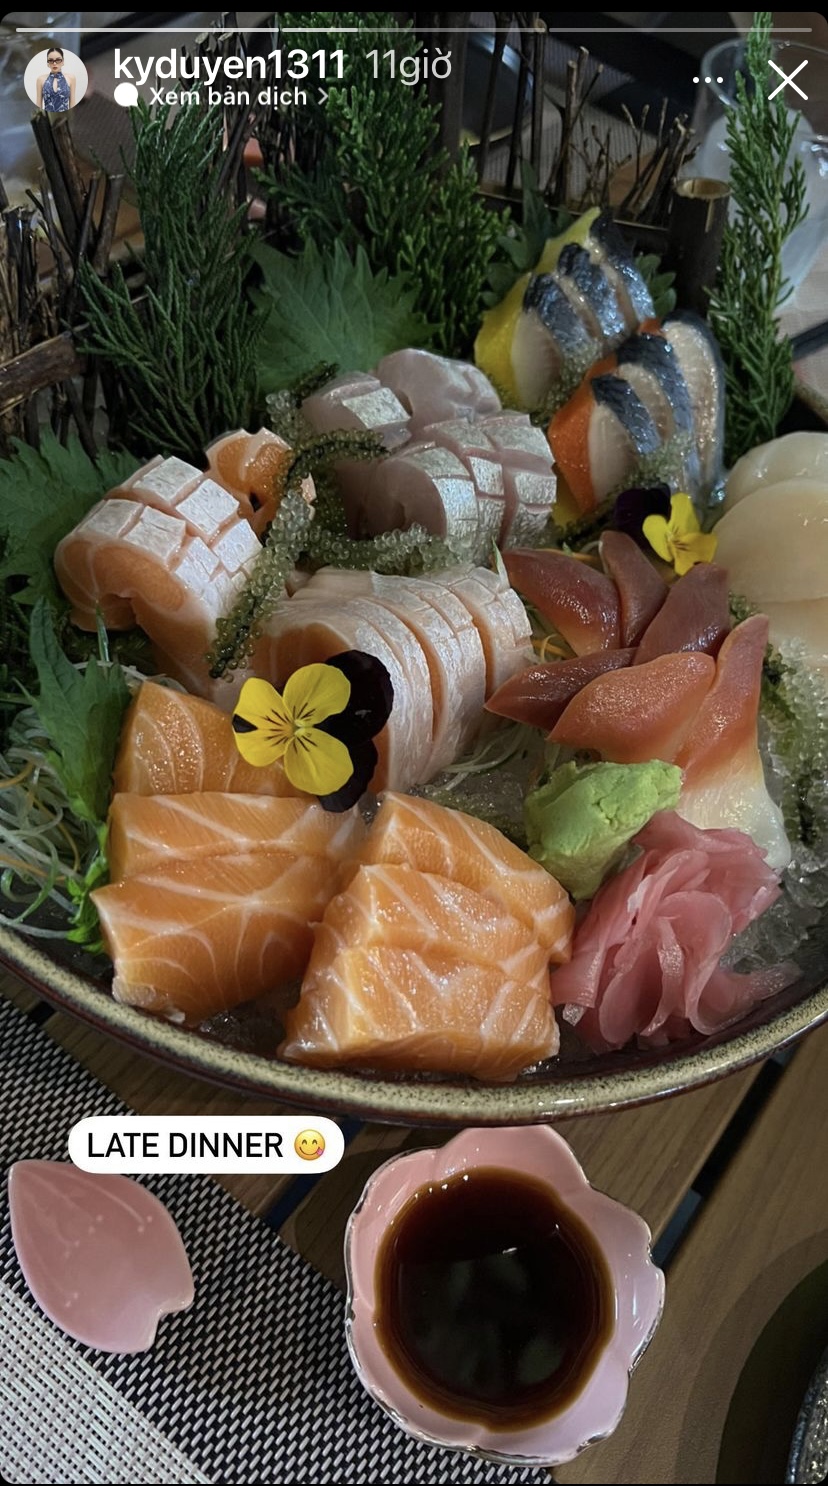 Cũng giống Thuý Ngân, hoa hậu Kỳ Duyên và người bạn thân Minh Triệu cũng chọn sashimi làm bữa ăn muộn cho đêm Noel năm nay.